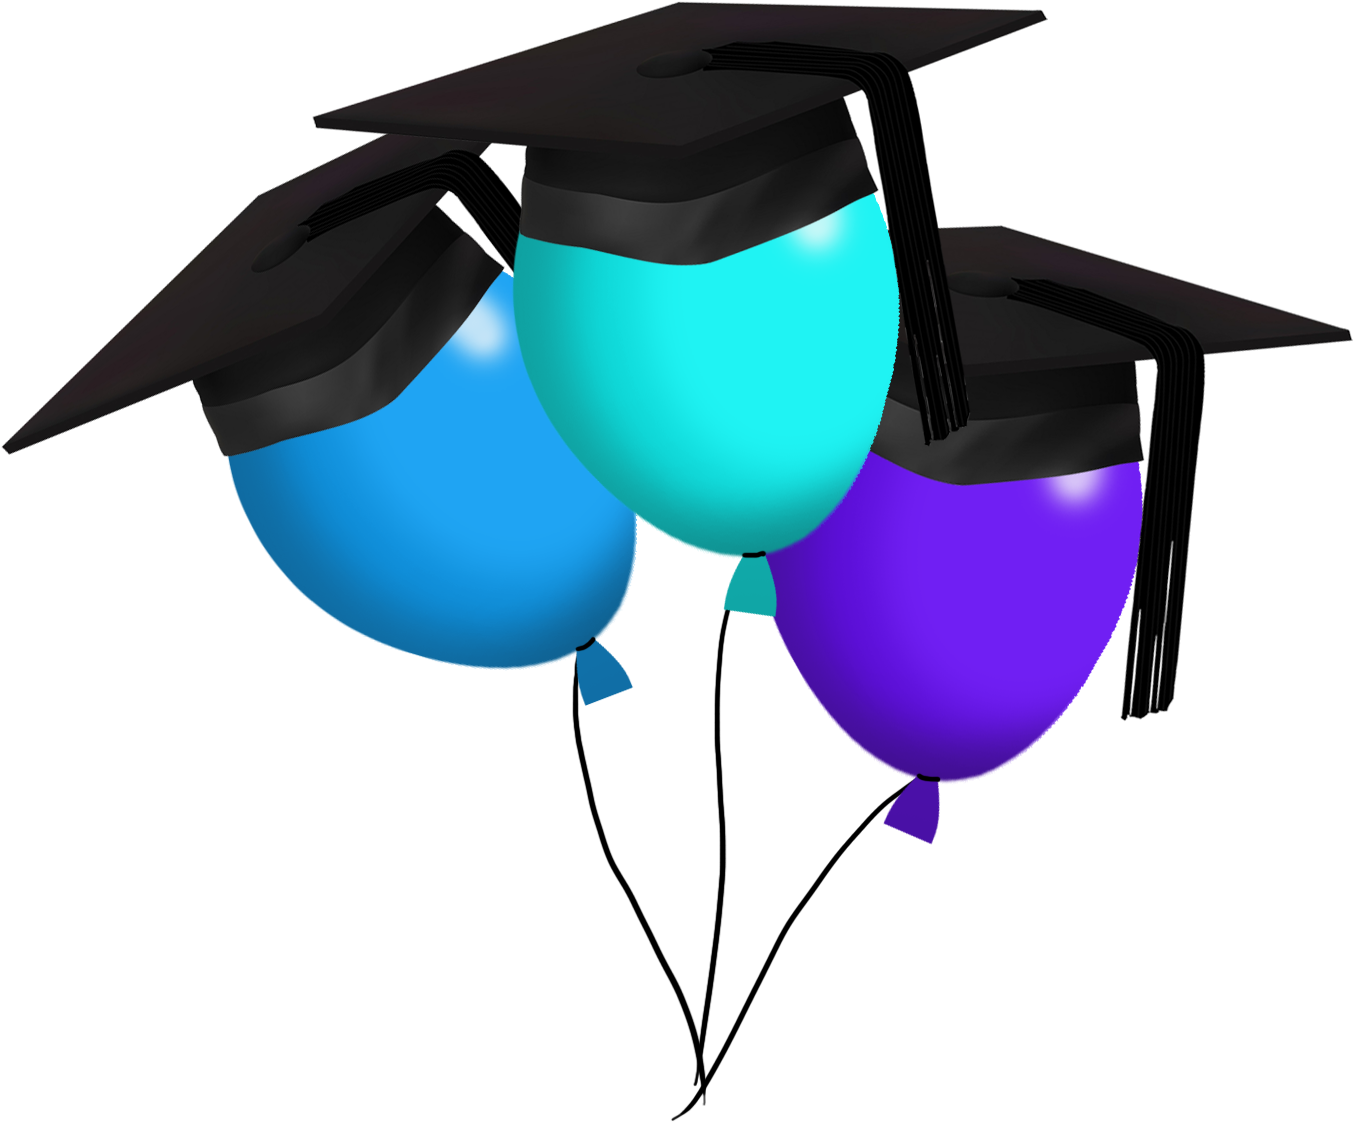 Funny Graduation Balloons Clipart, Graduation Clipart - Funny Graduation Balloons Clipart, Graduation Clipart (1417x1339)